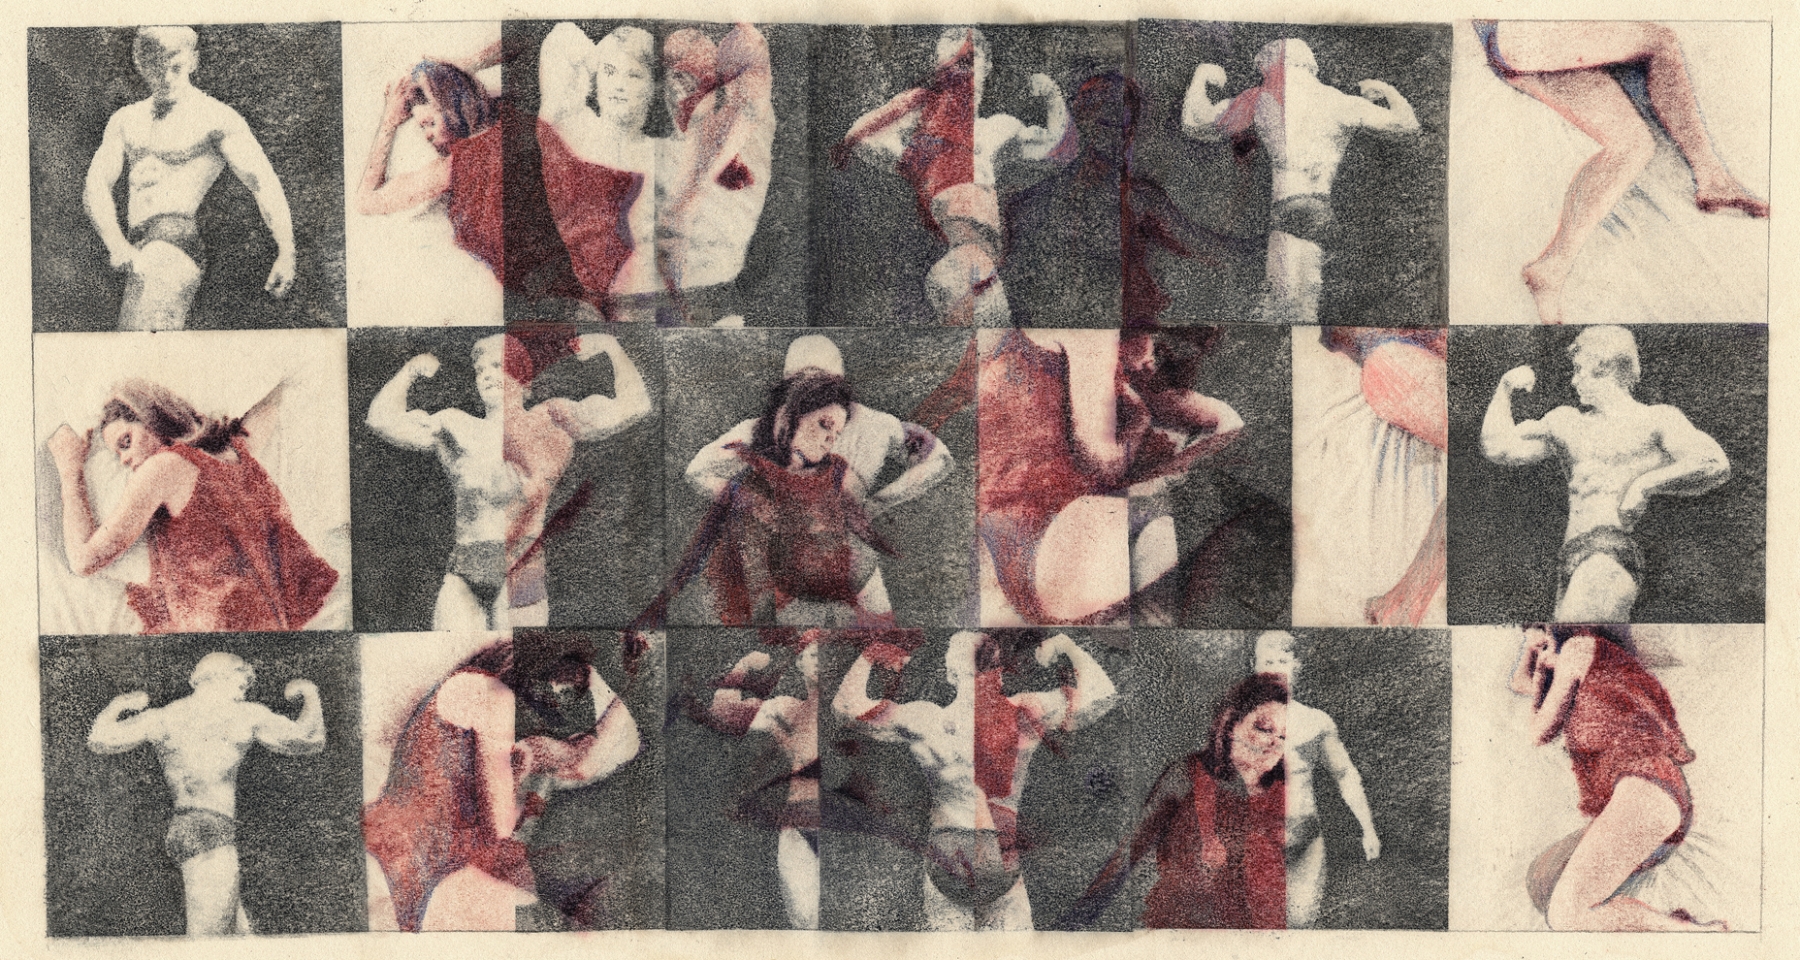 Sleeper/Muscle Man, 1967 Ink transfer 15 x 20